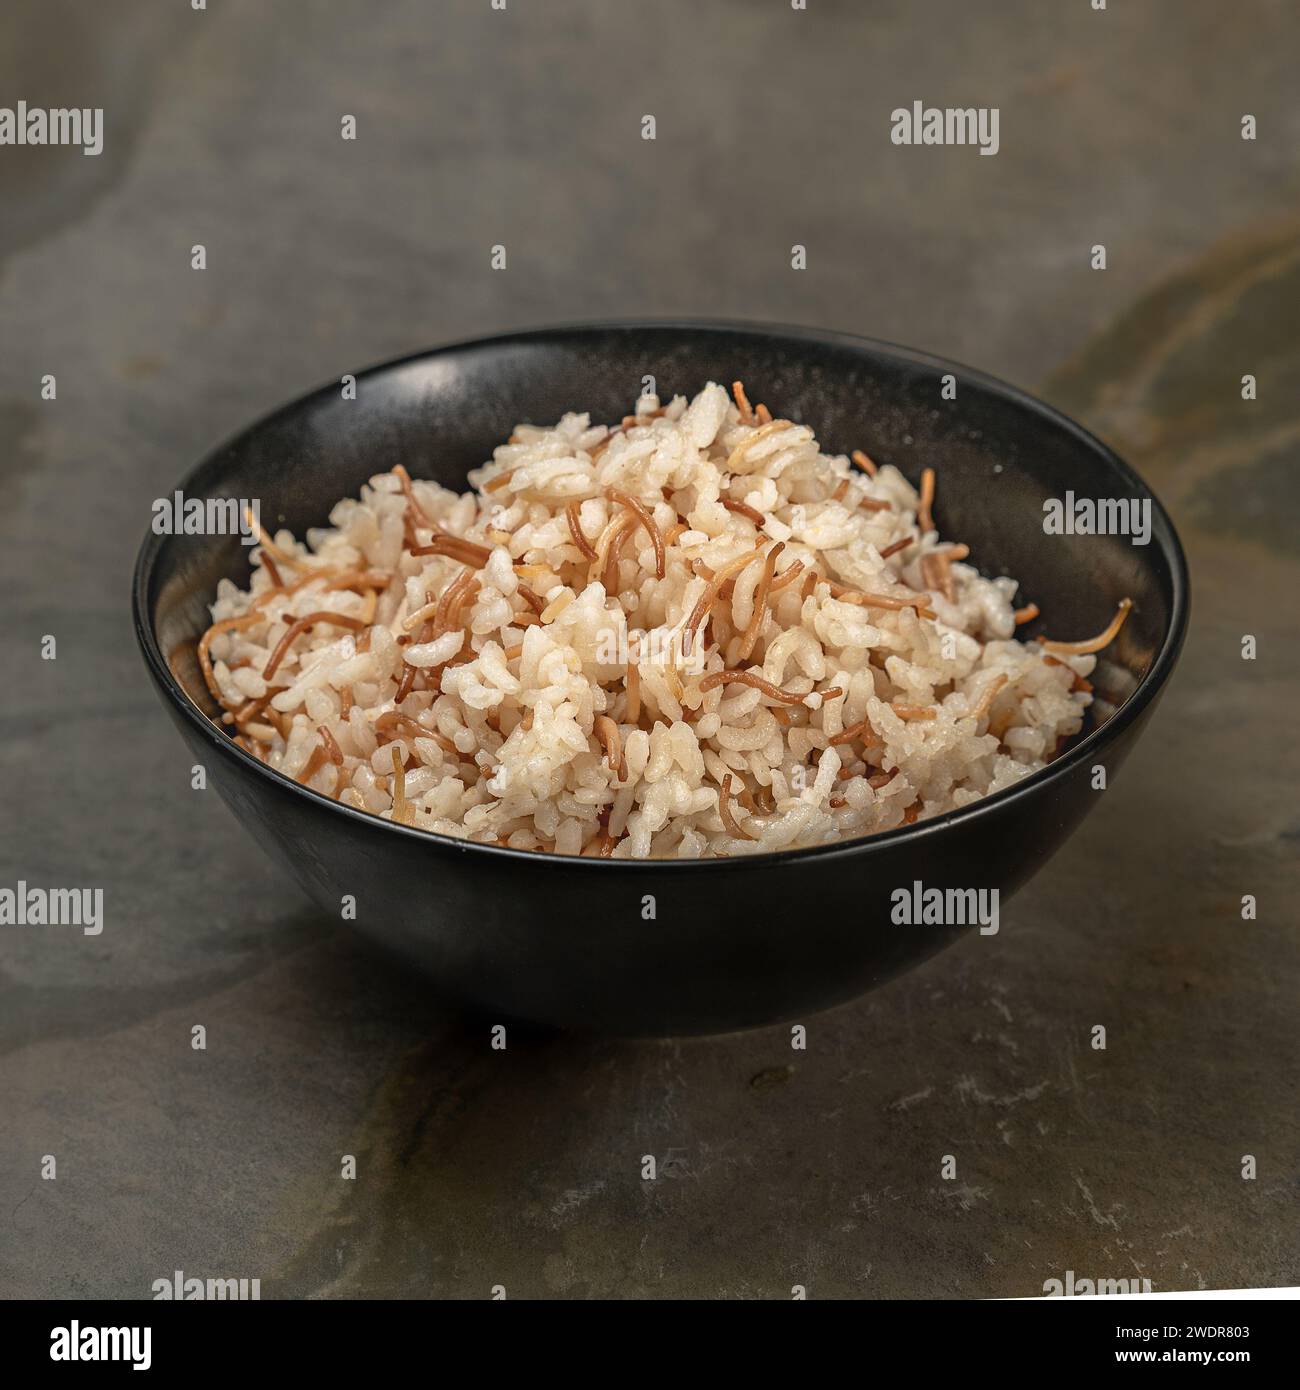 Eine Nahaufnahme mit Reis mit kleinen, türkischen Nudeln, die in einer schwarzen Schüssel serviert werden. Stockfoto